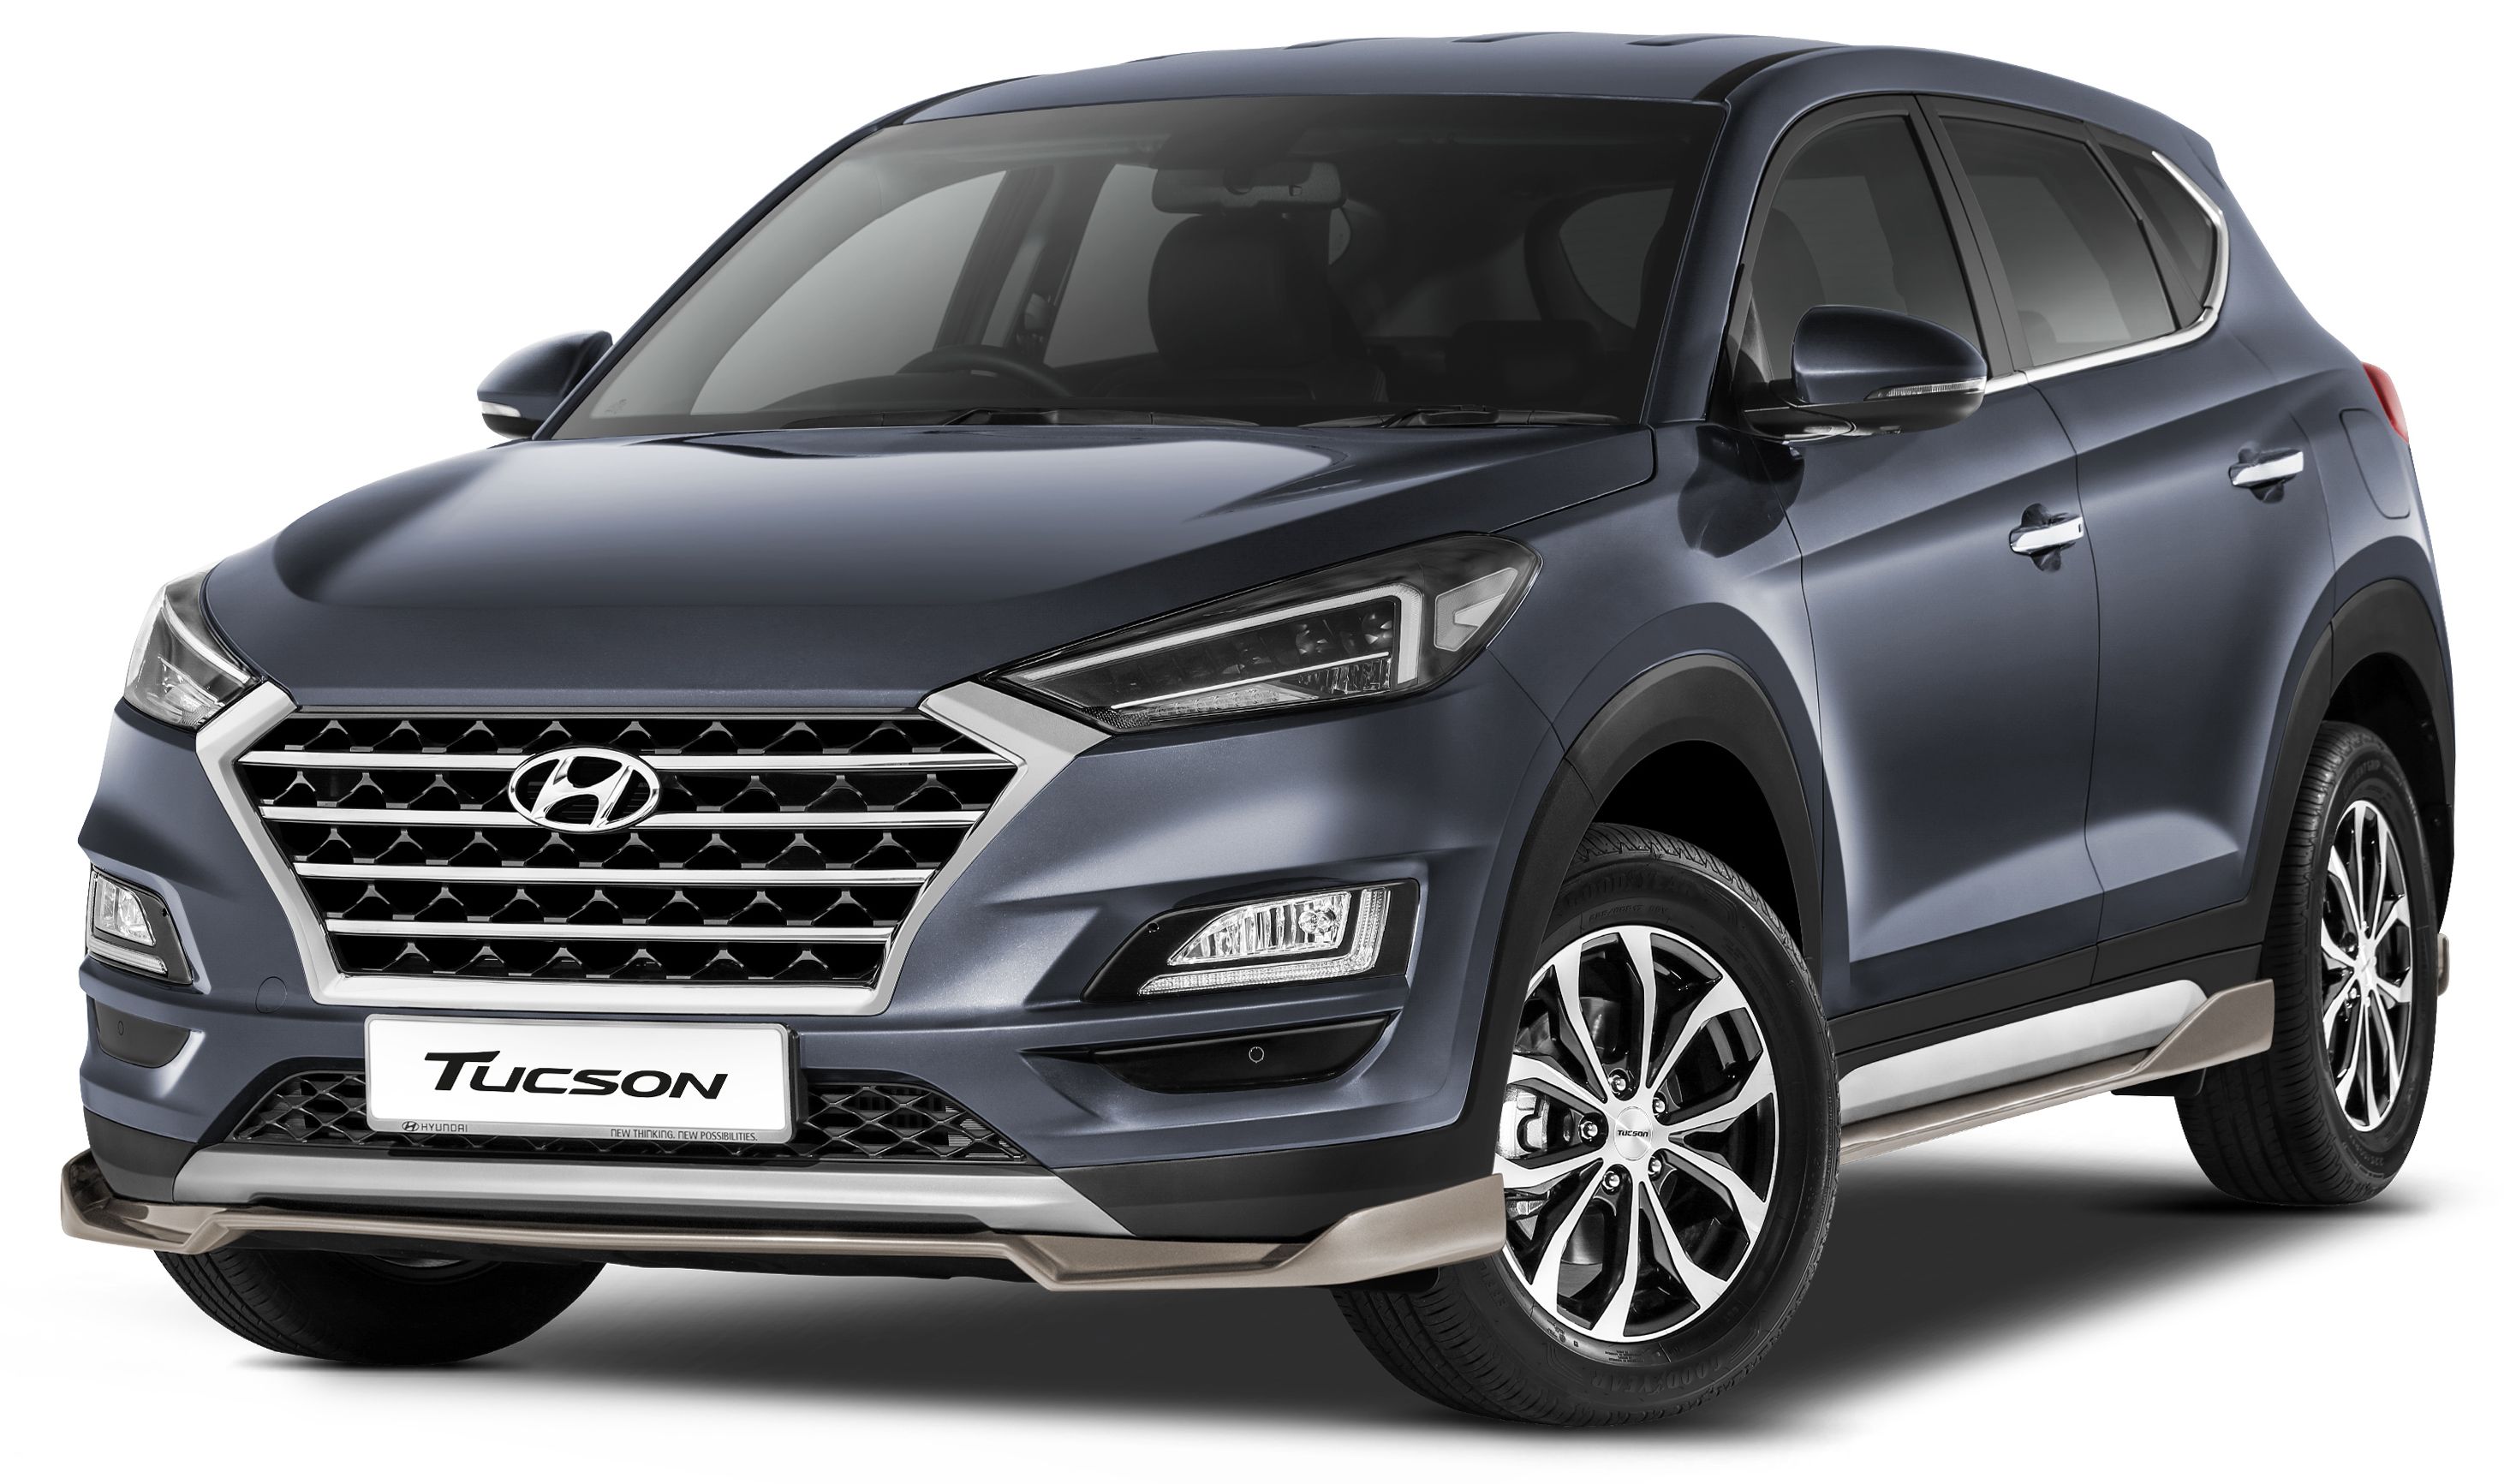 AD Hyundai Year End Bonanza Is Back Buy New Car Enjoy Cash Rebates 